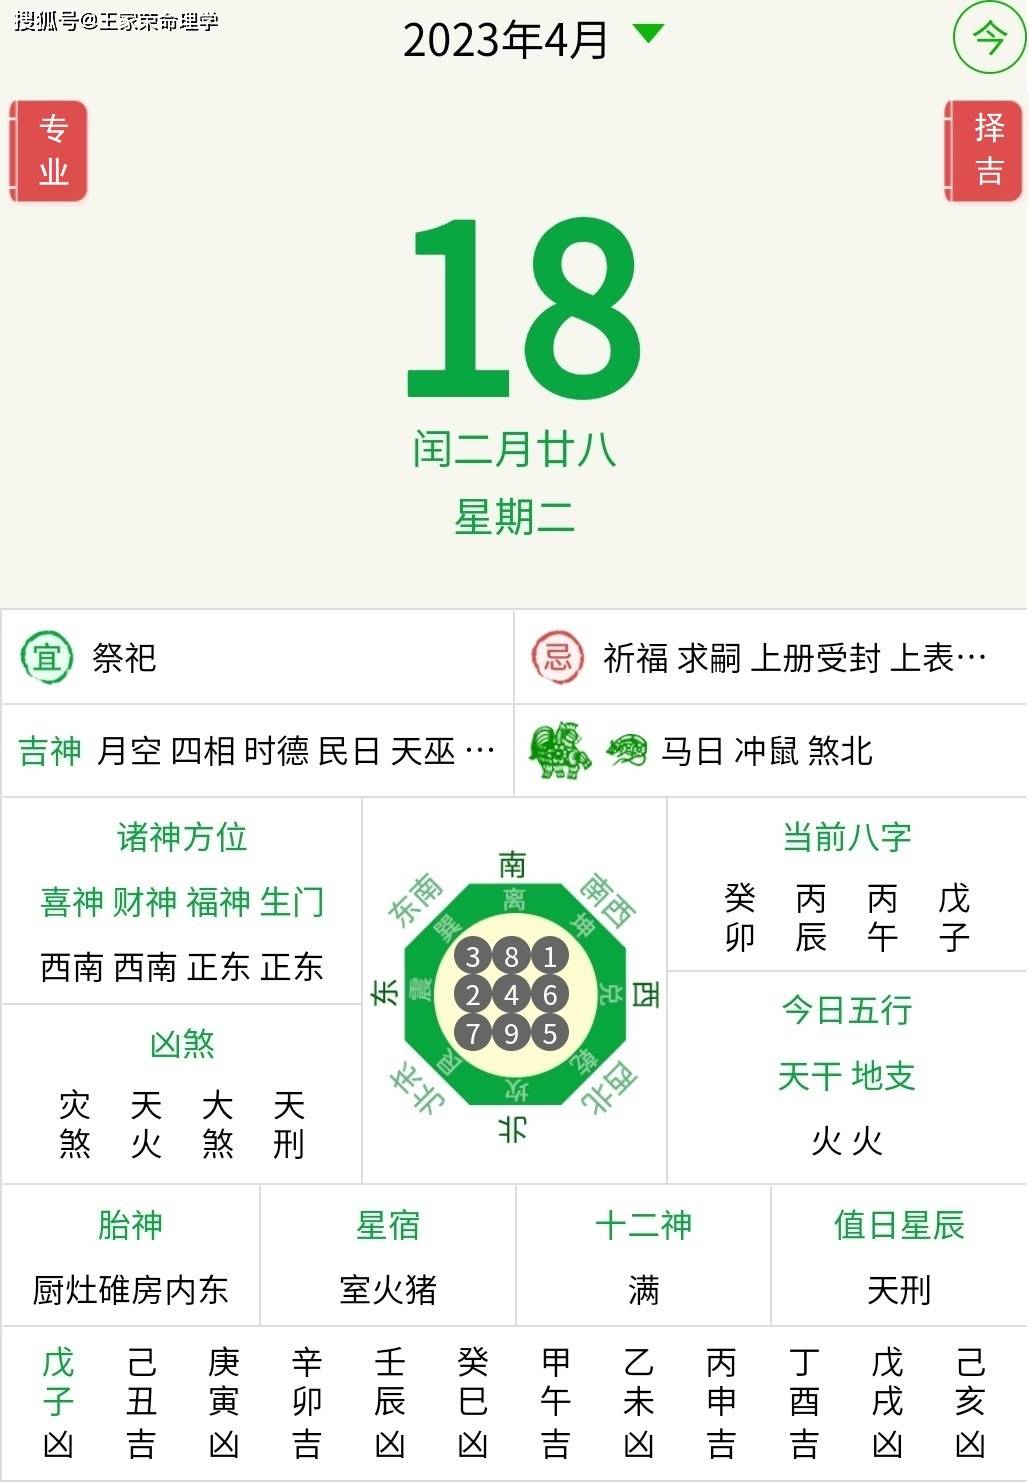 十二生肖每日运势解读2023年4月18日_手机搜狐网